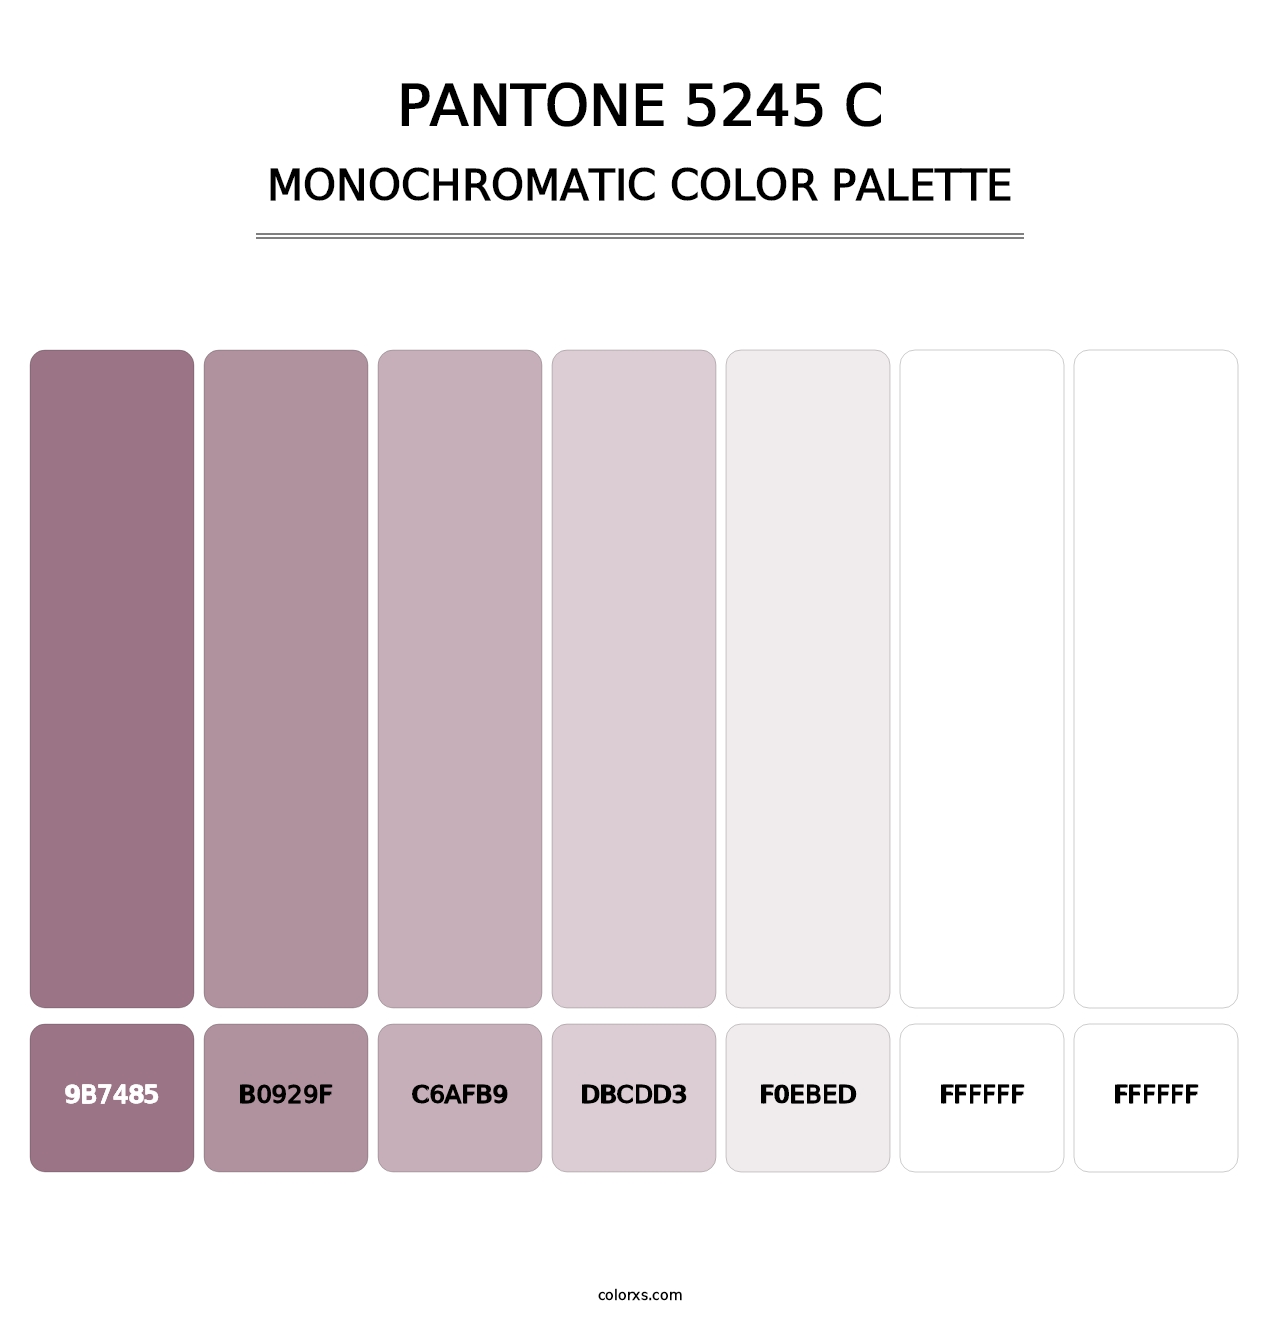 PANTONE 5245 C - Monochromatic Color Palette